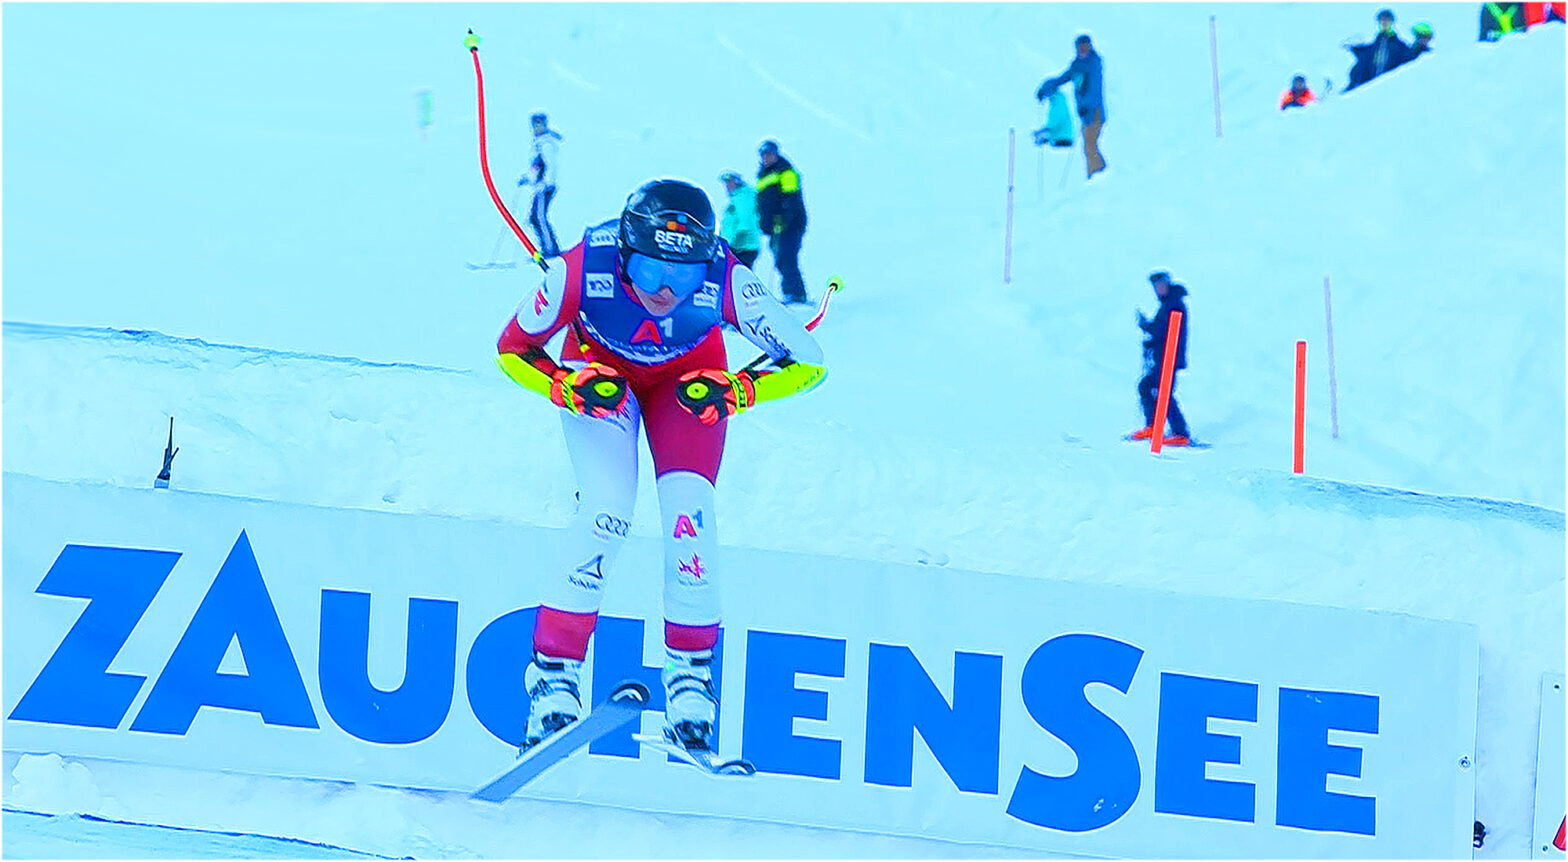 Ski Weltcup LIVE: Abfahrtslauf der Damen in Altenmarkt-Zauchensee - Vorbericht, Startliste und Liveticker - Startzeit 10.45 Uhr